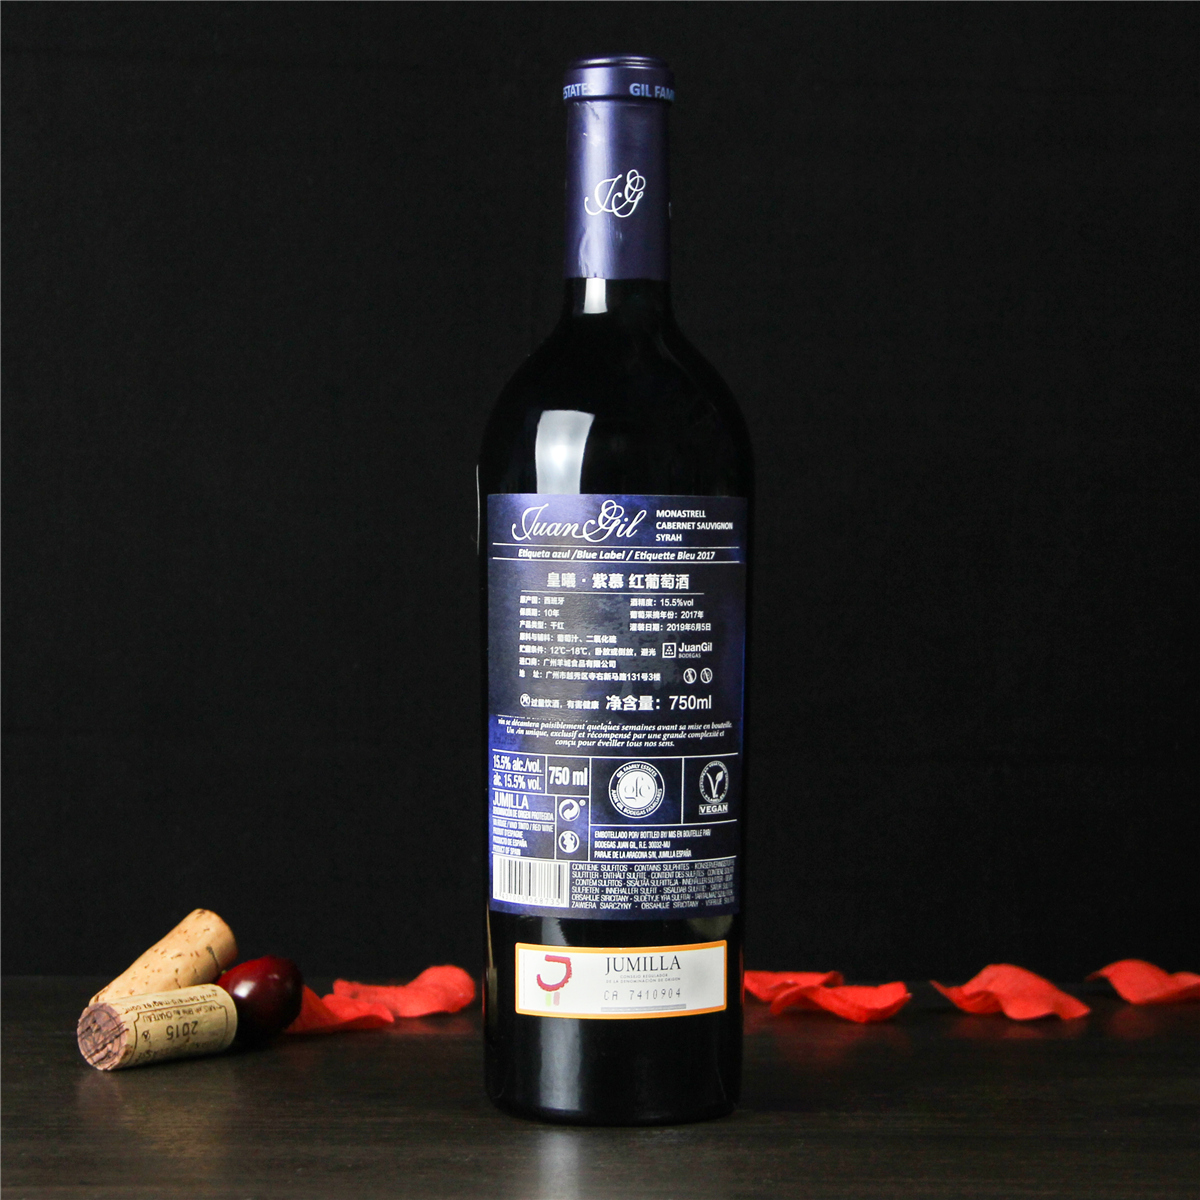 西班牙胡米利亚皇曦·紫慕红葡萄酒红酒